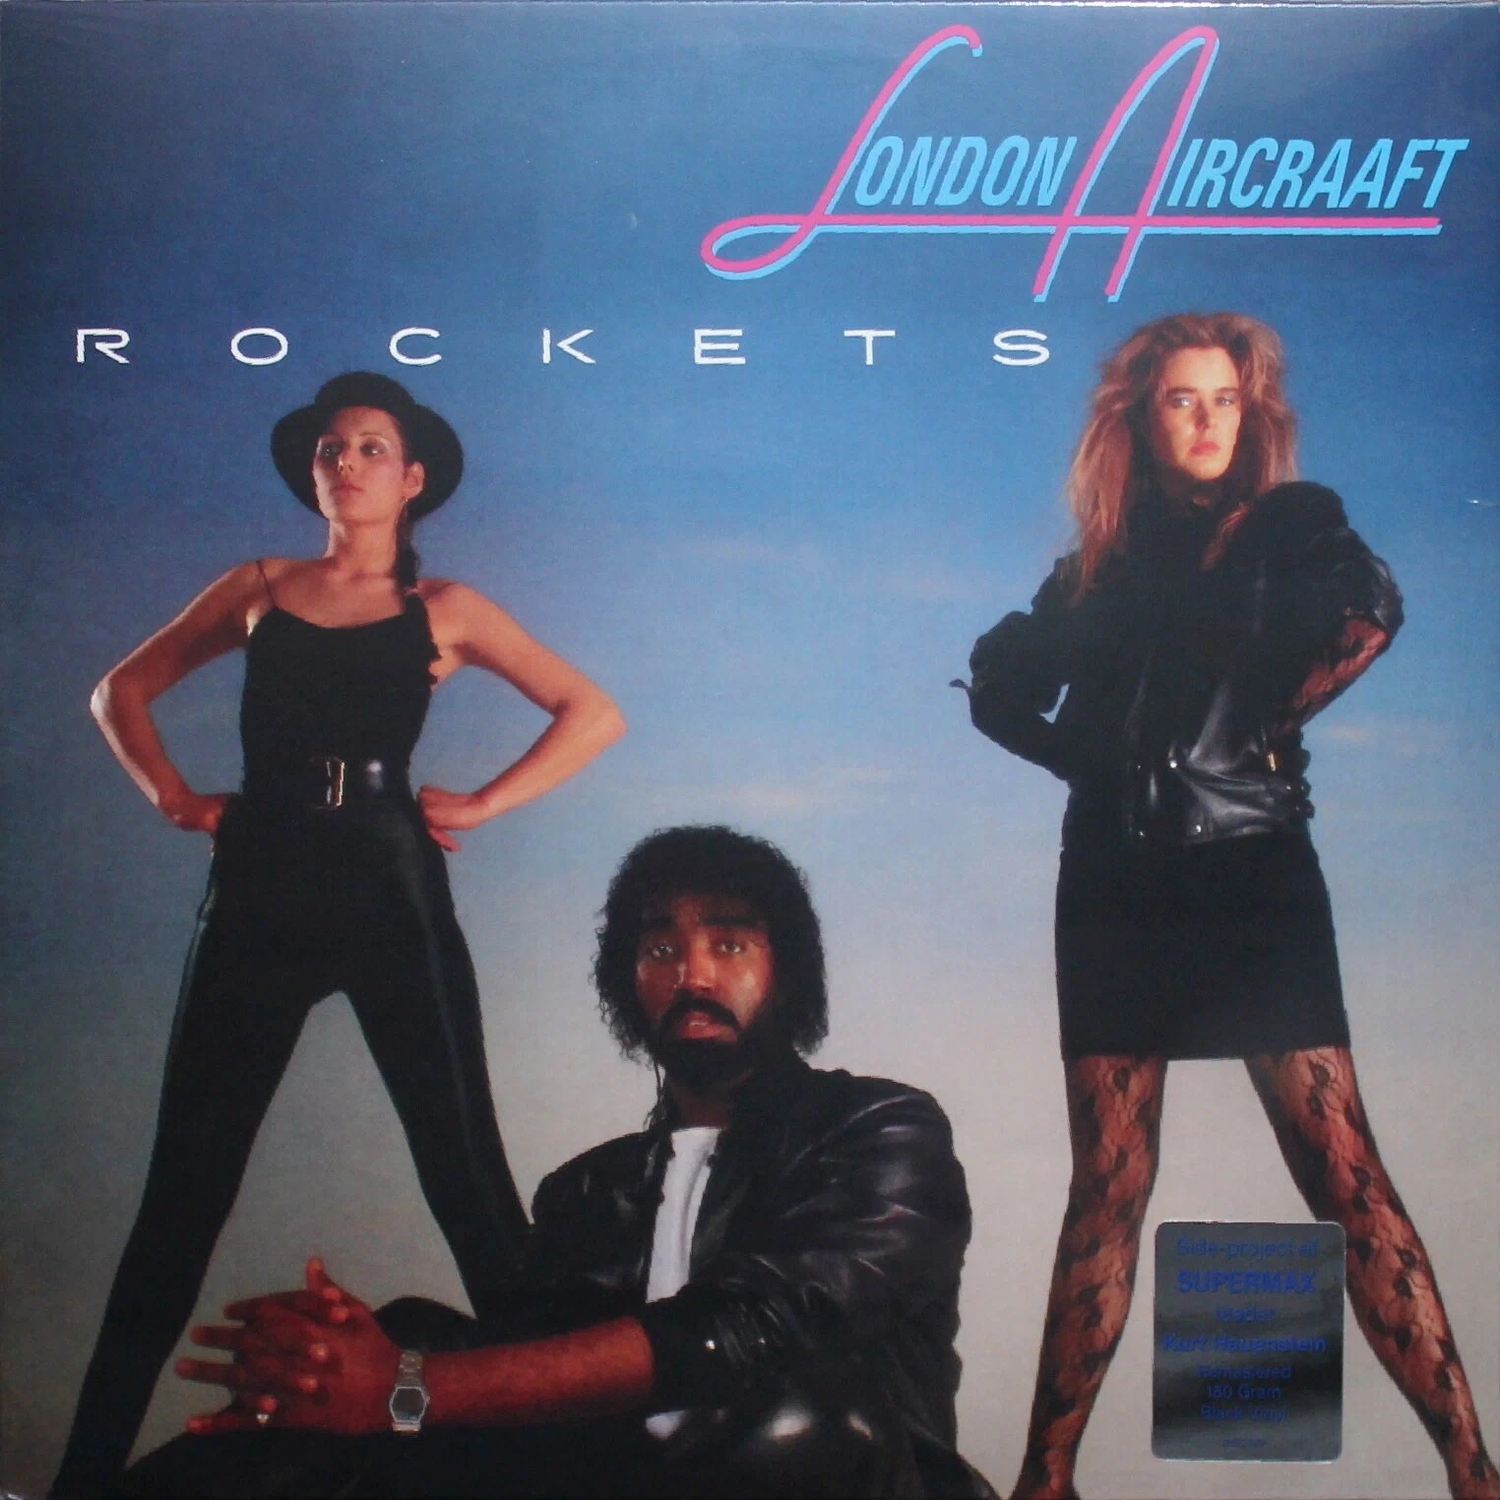 Виниловая Пластинка London Aircraaft Rockets (4601620108716) виниловая пластинка london aircraaft – rockets lp